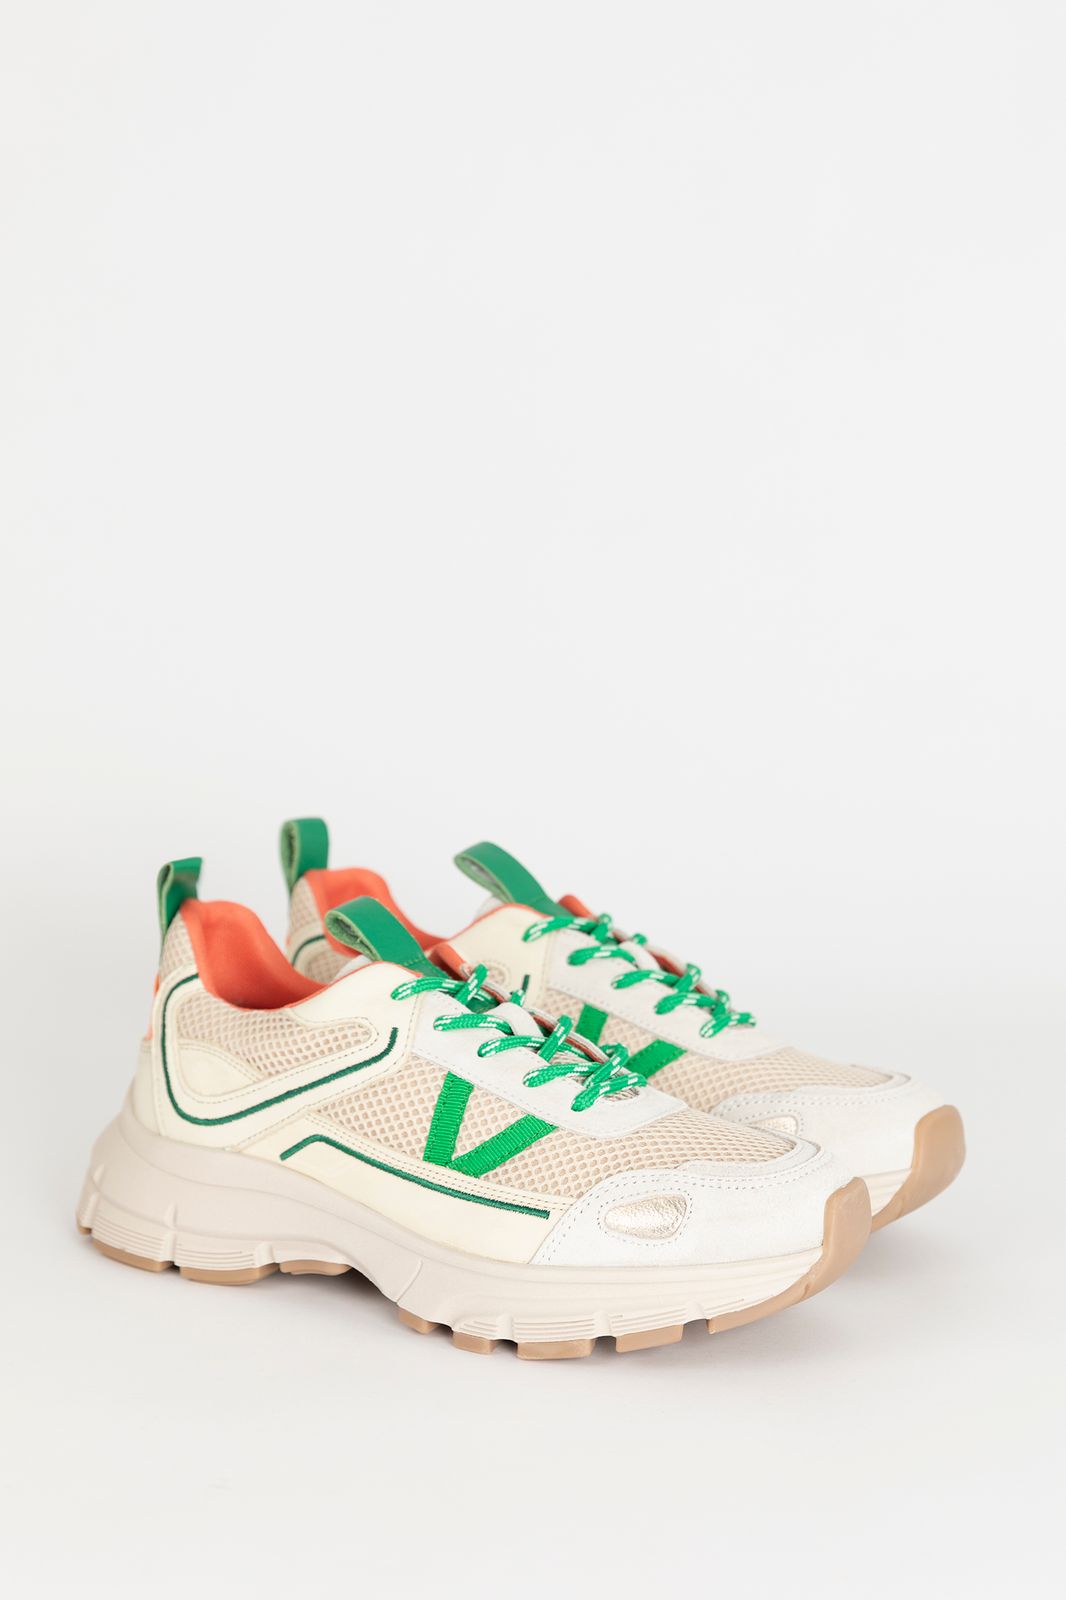 Sneaker mit grünen Details - weiß